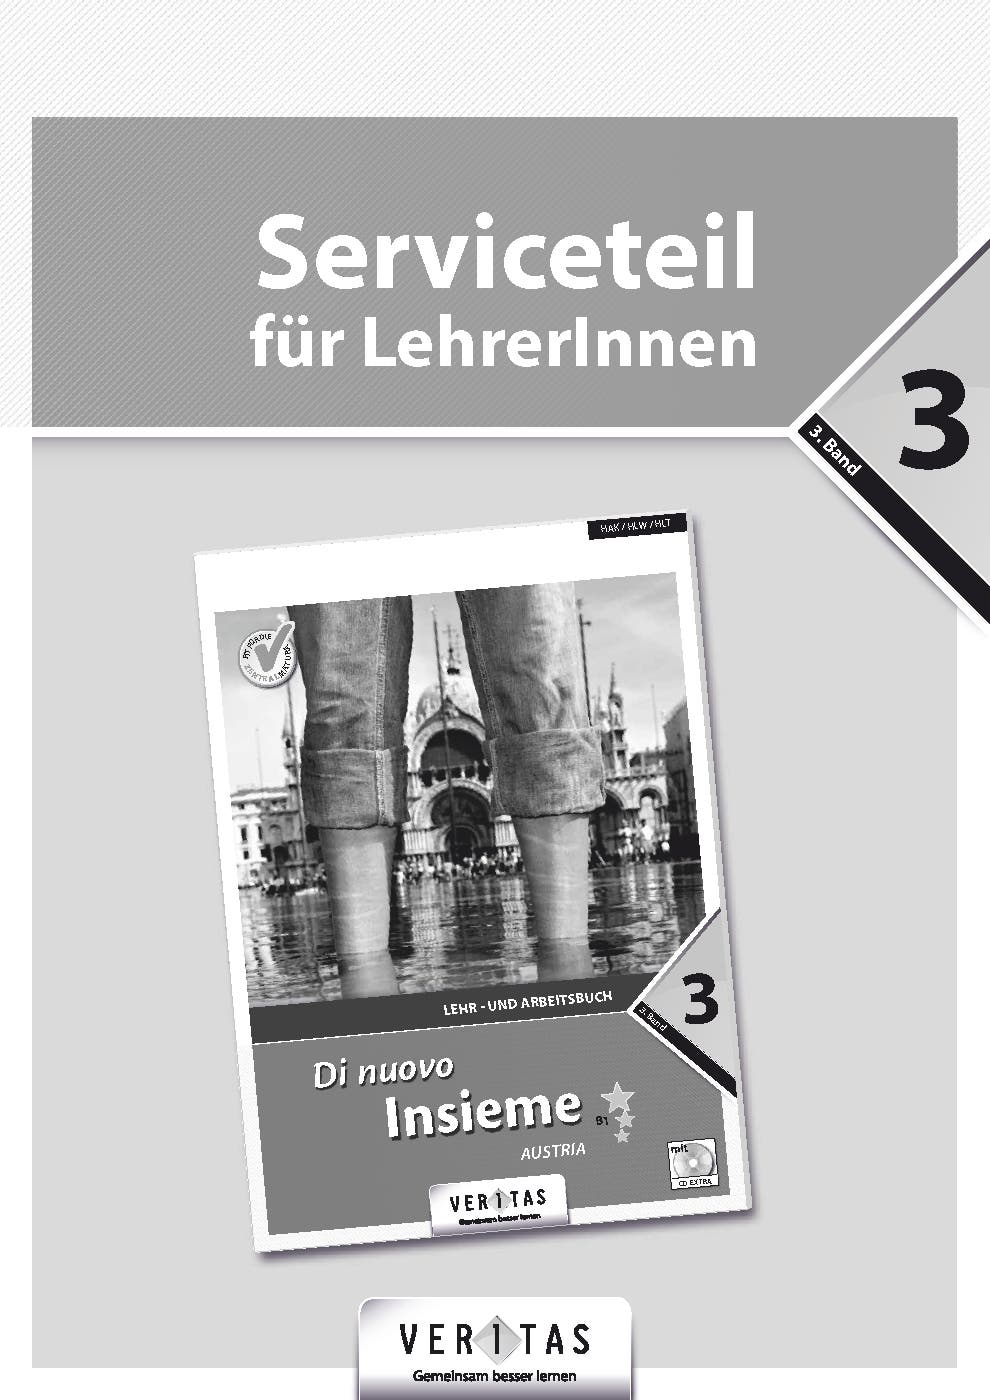 Di nuovo Insieme B1 (BHS) Austria. Serviceteil für LehrerInnen (gedruckt)